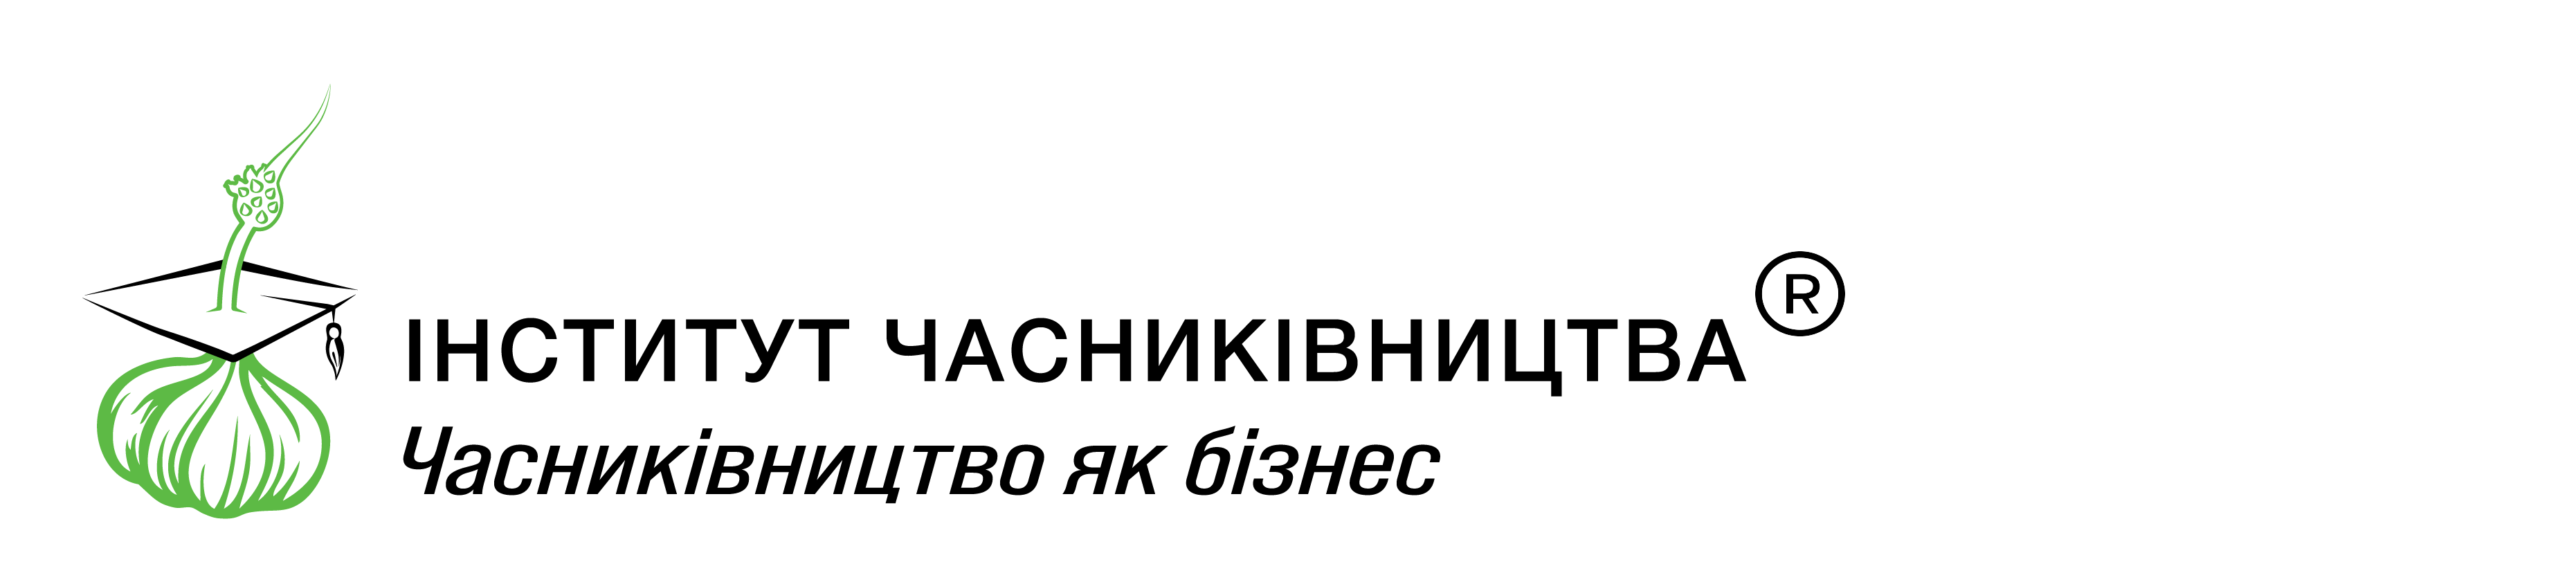 Лого на прозрачном фоне - гориз.